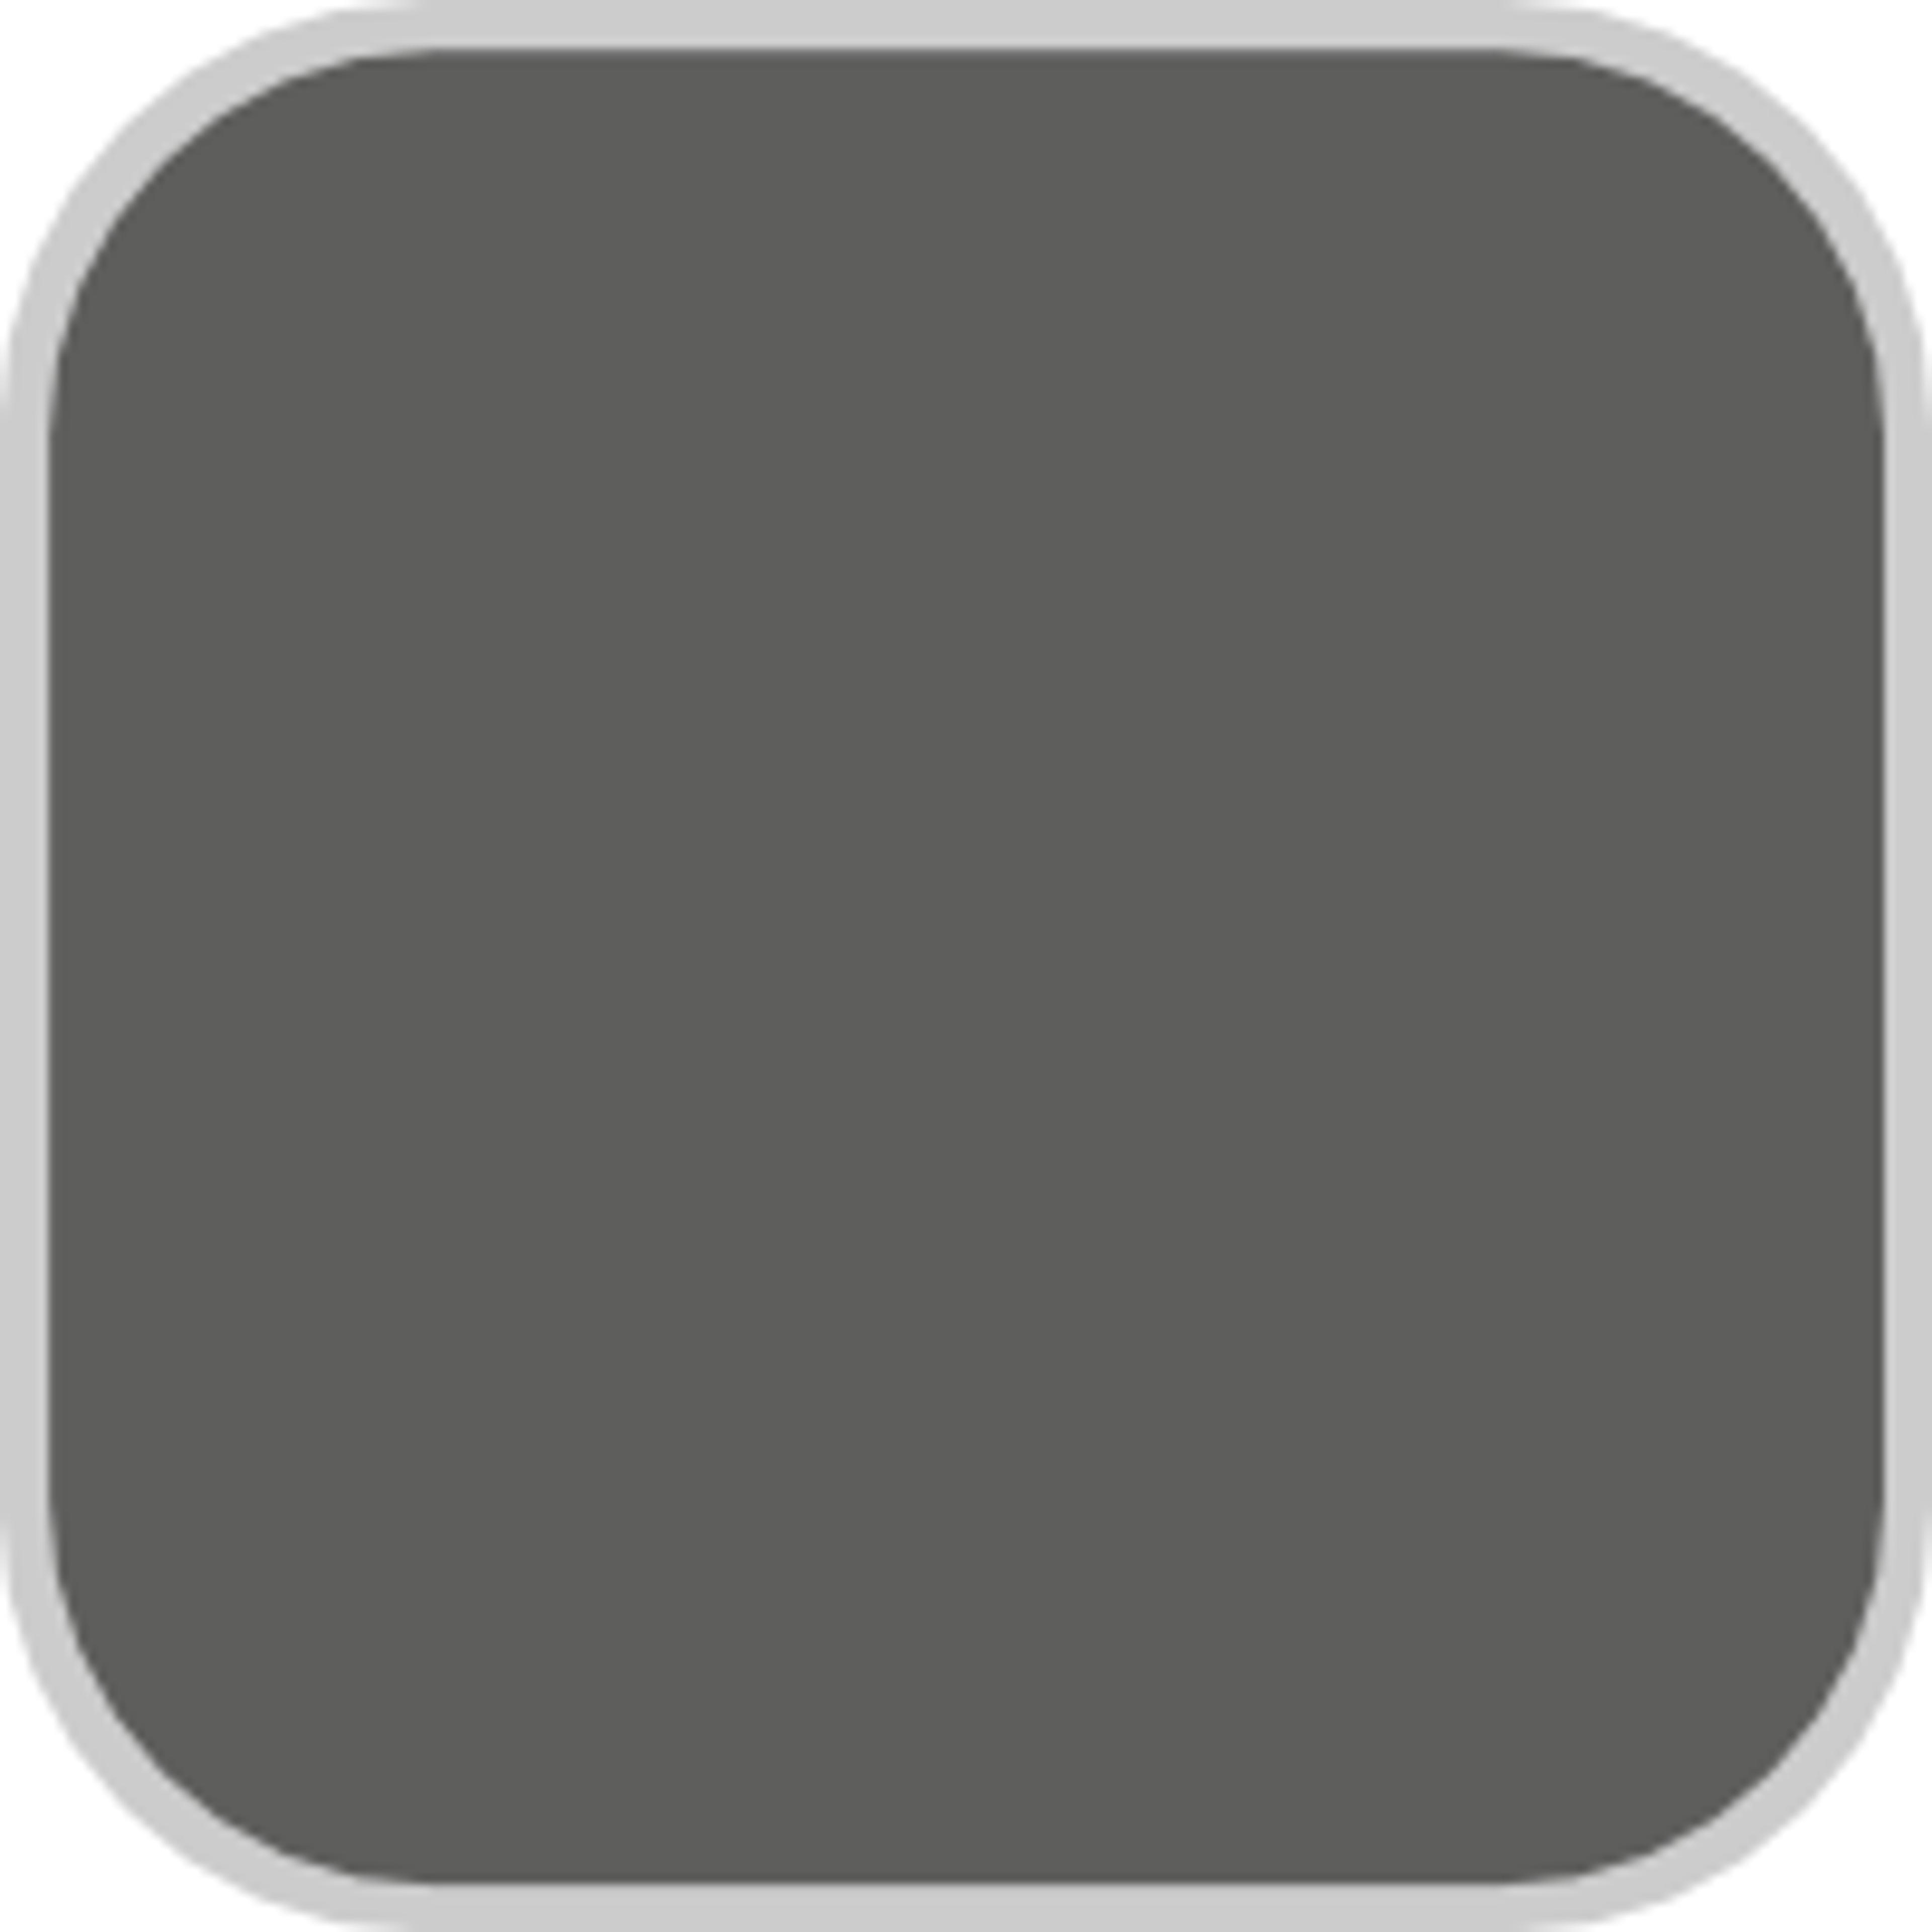 N520-6 Asphalt Gray | Behr Paint Colors